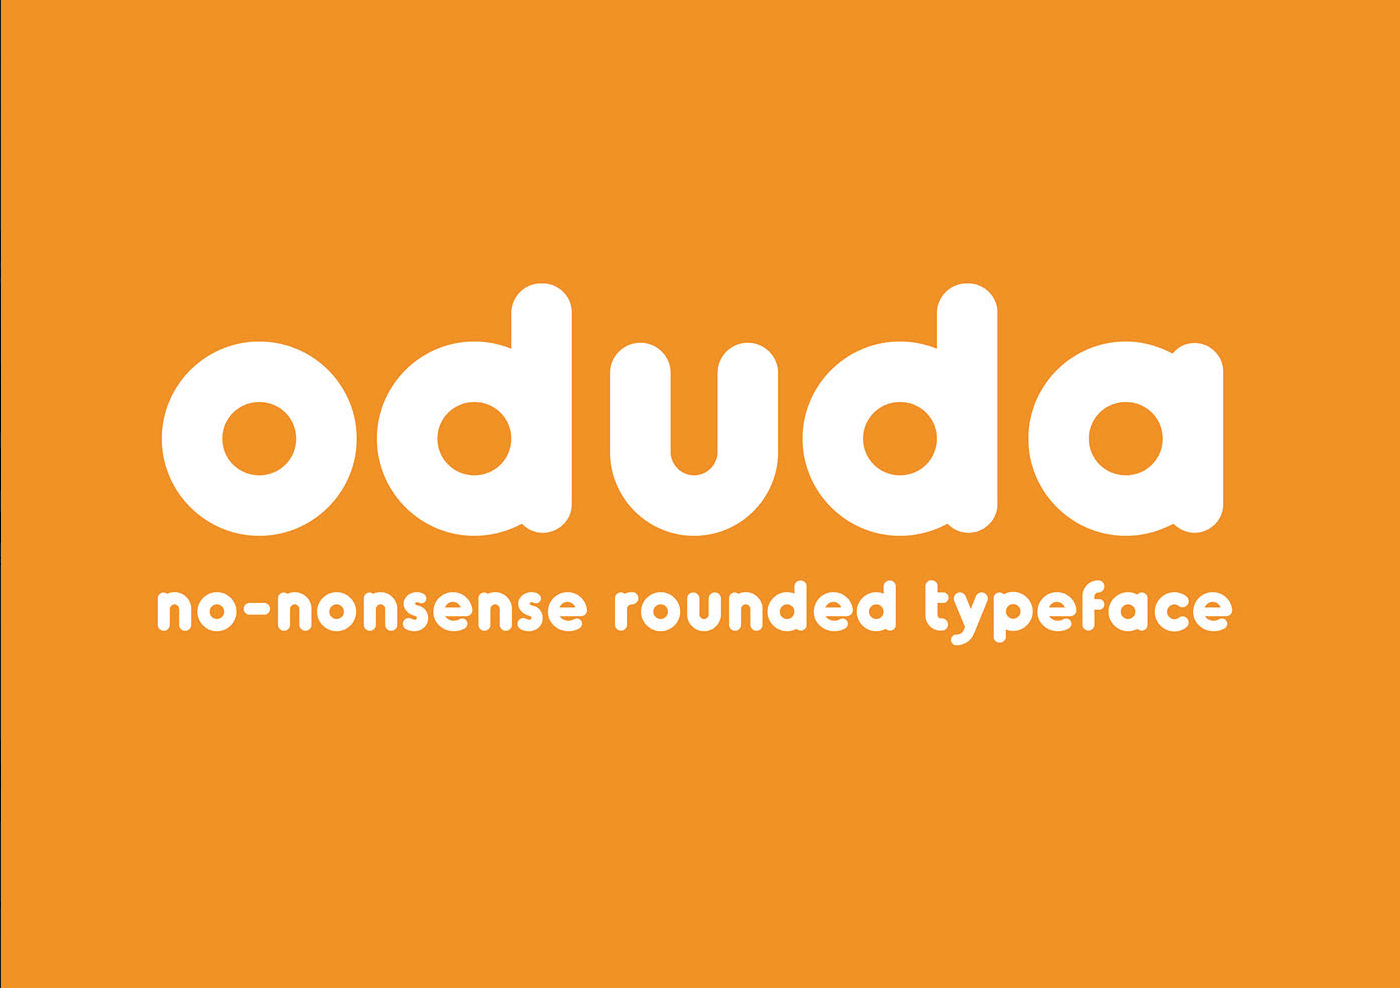 Oduda rounded typeface